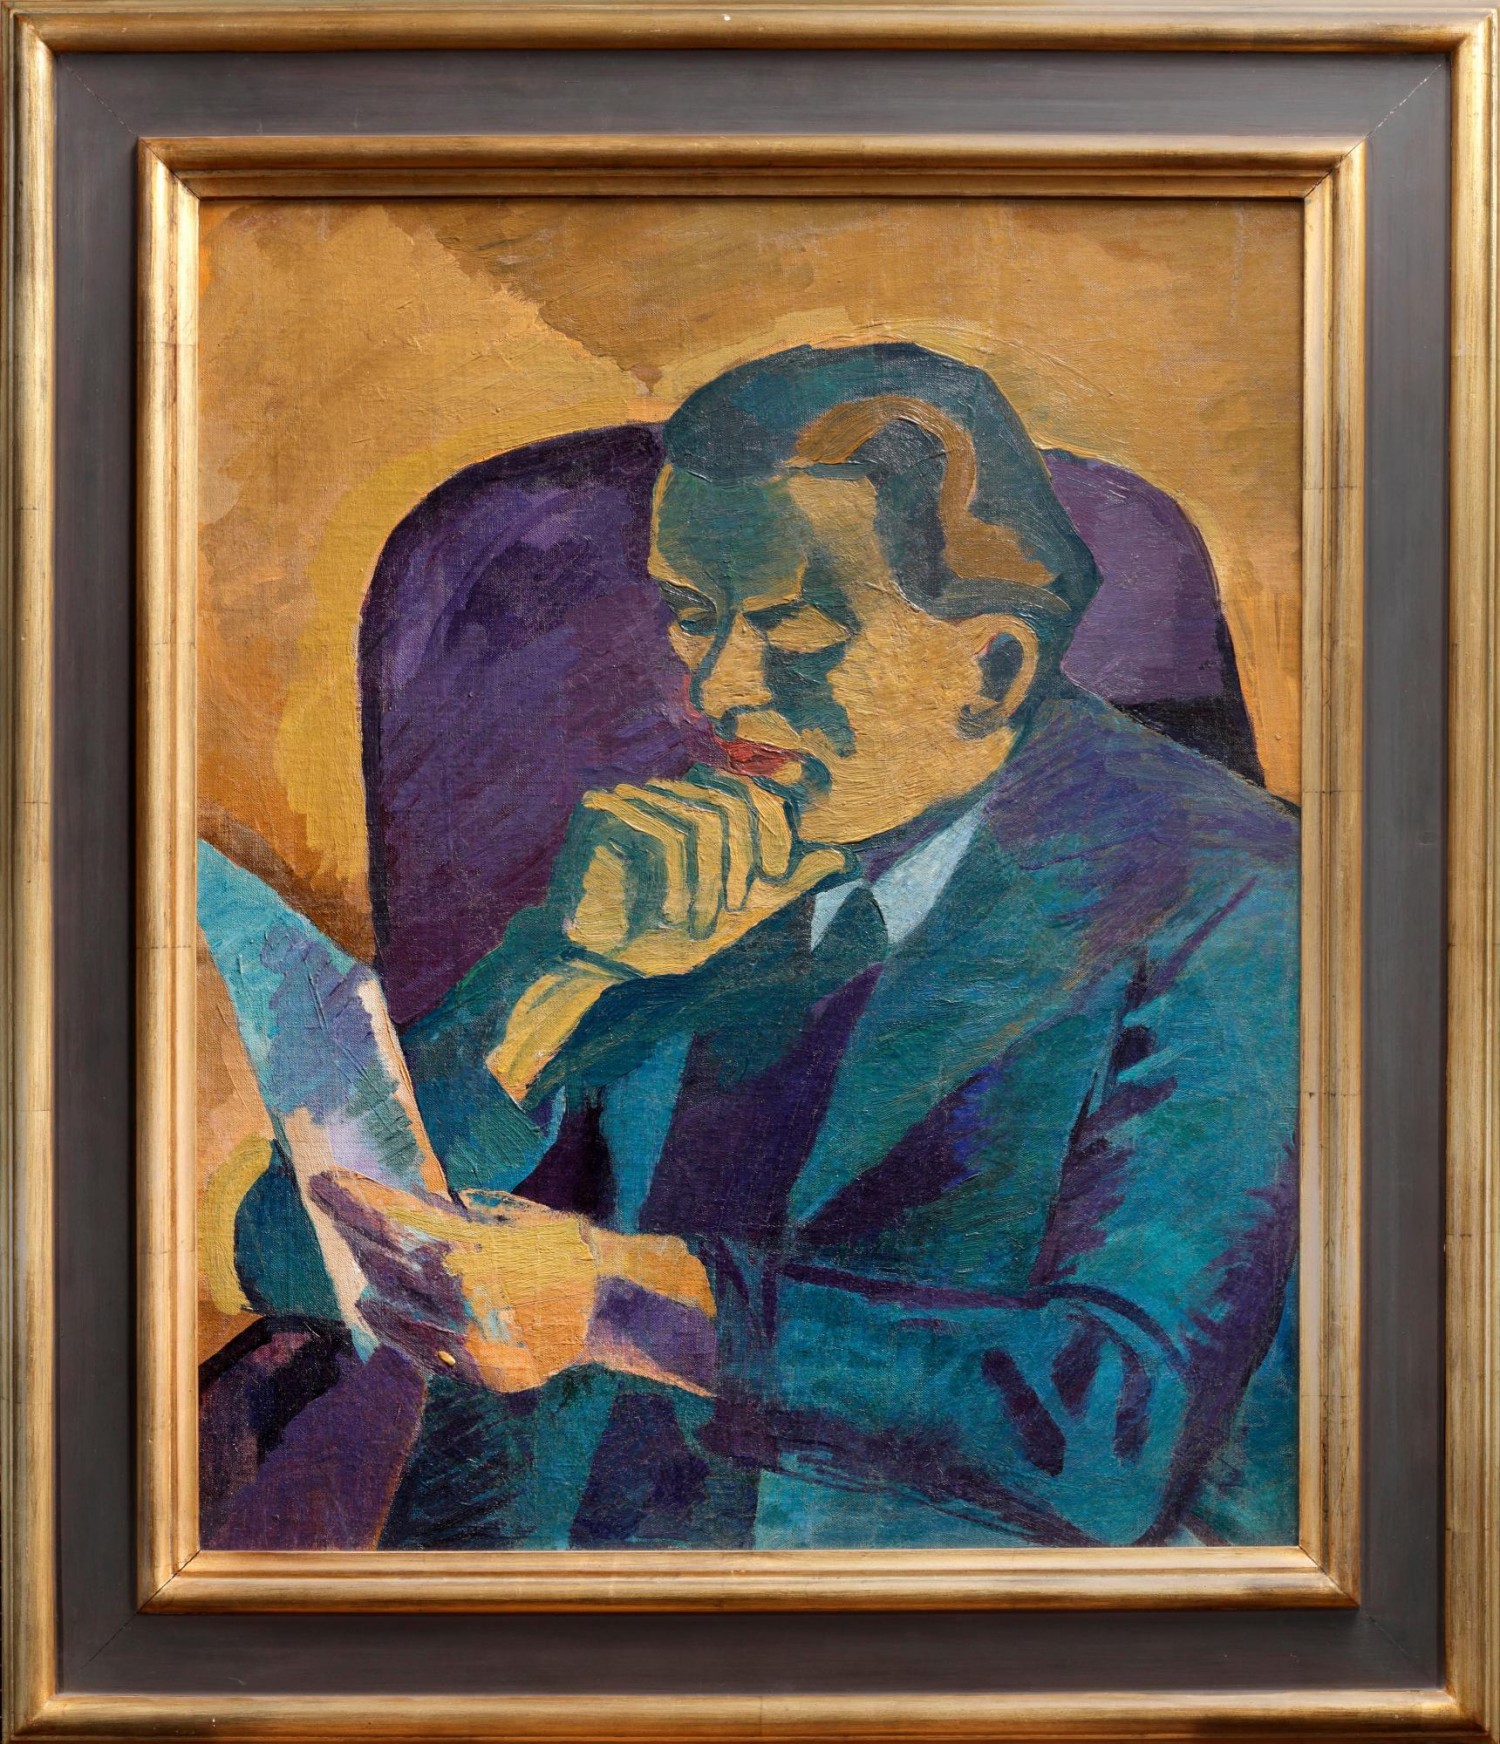 Bohumil Kubišta: Podobizna čtenáře (Antonín Matějček), 1910, olej na plátně, 70 x 58 cm, Adolf Loos Apartment and Gallery 19. 3. 2023, vyvolávací cena: 15 000 000 Kč (+21% provize)